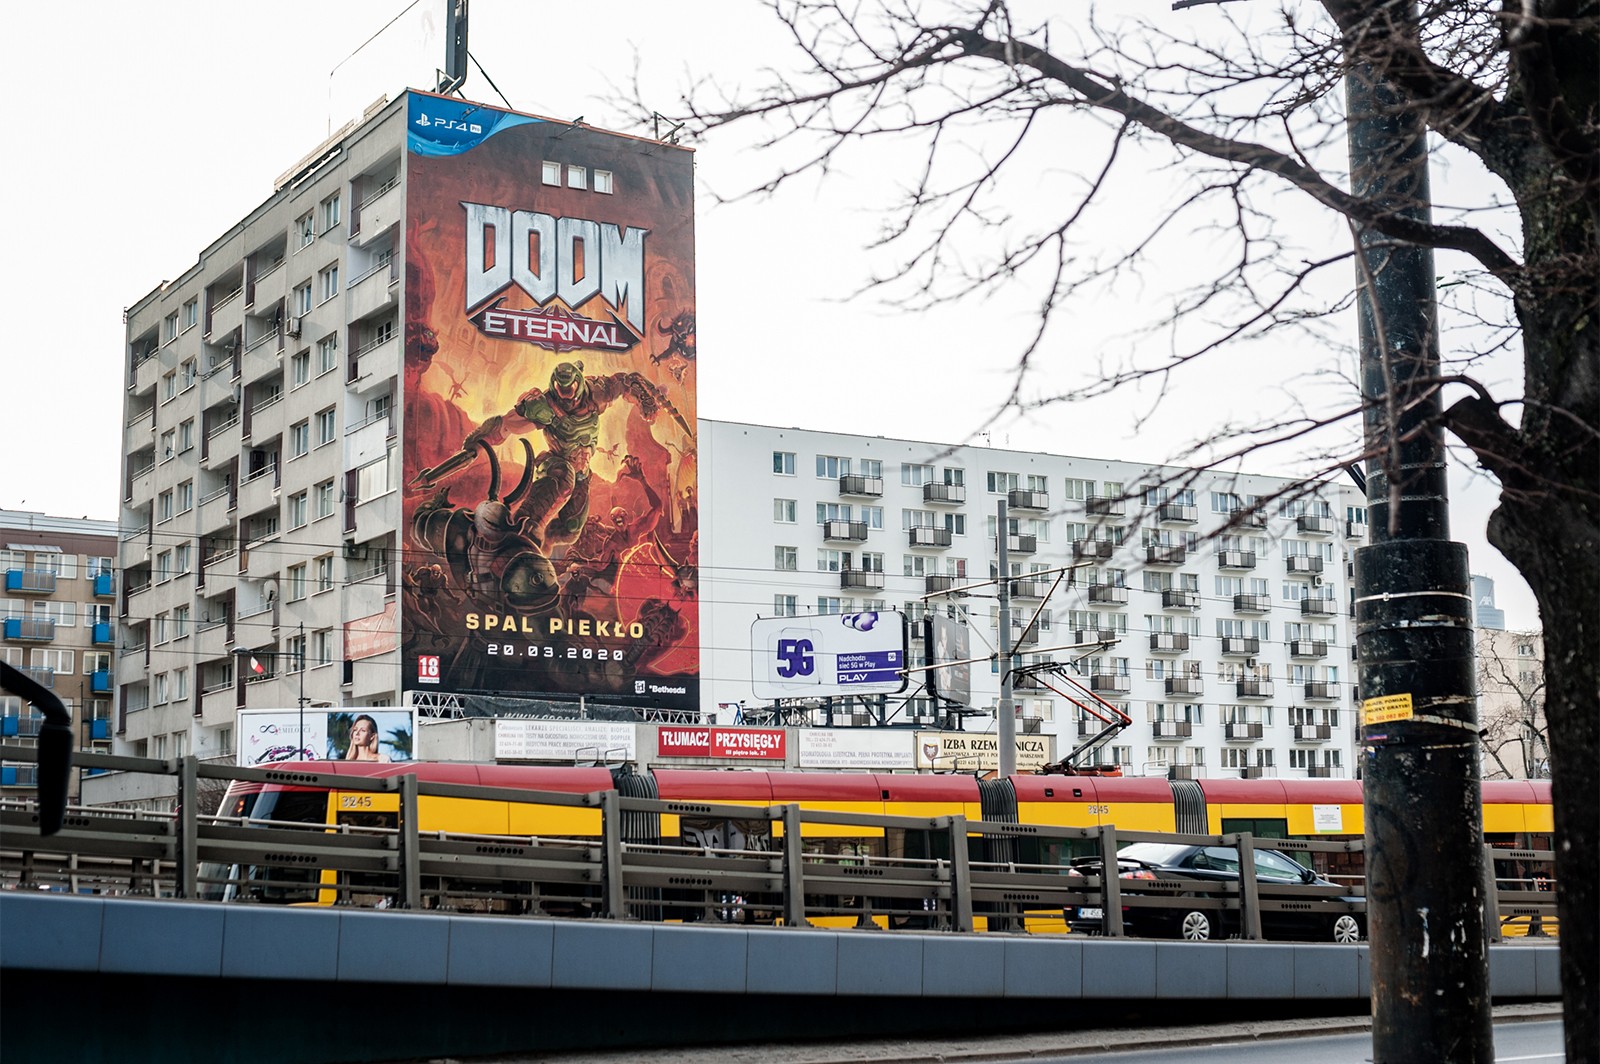 Mural reklamowy DOOM! Eternal w Warszawie | SPAL PIEKŁO! | Portfolio